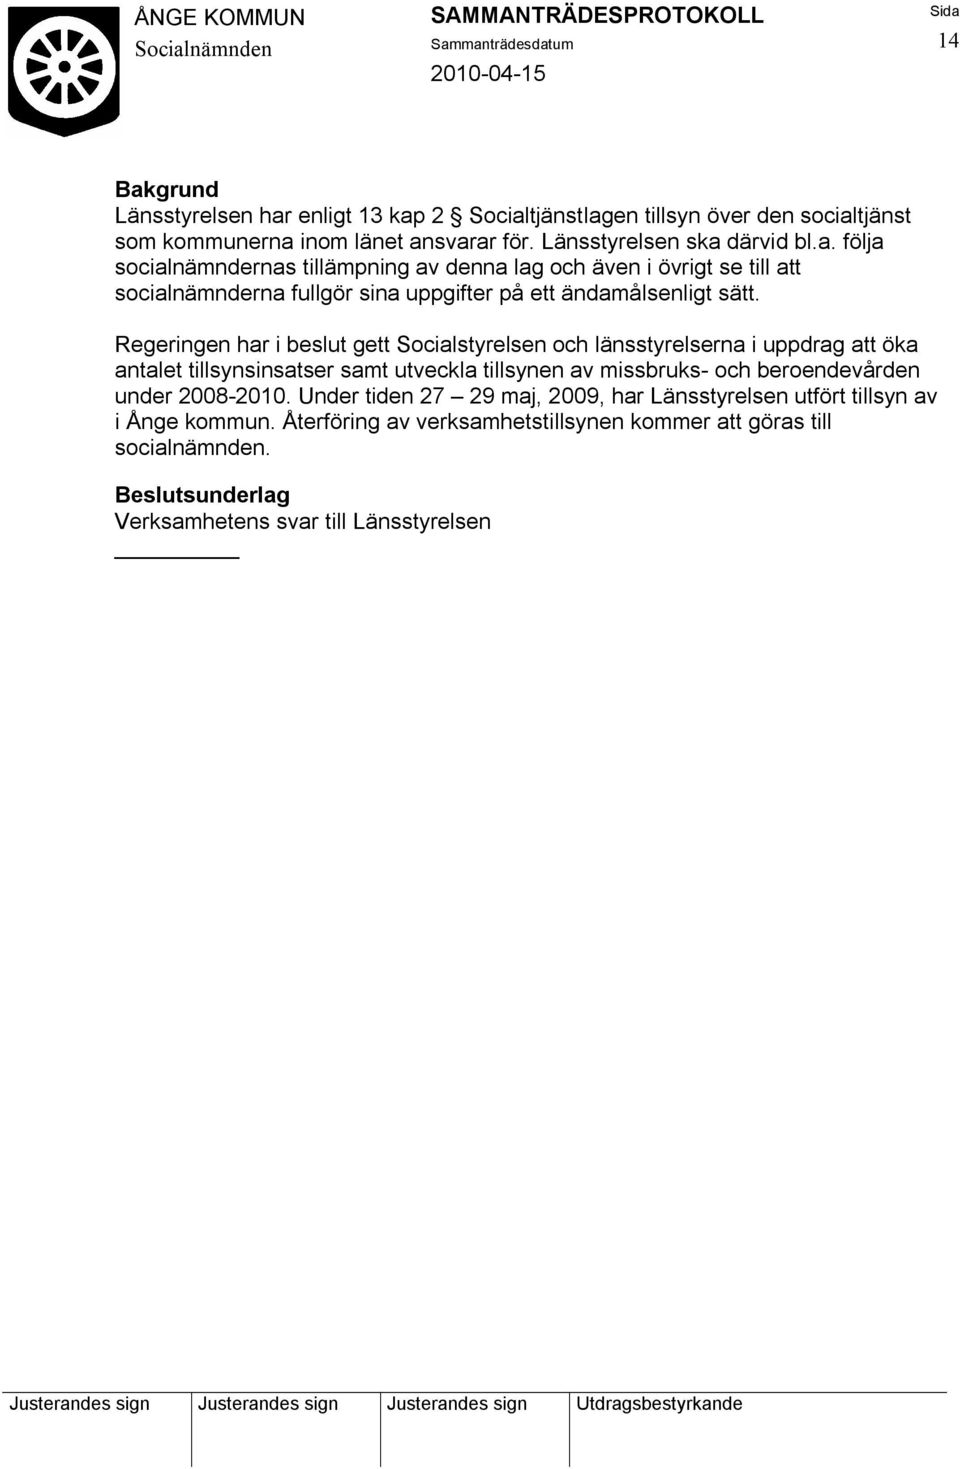 under 2008-2010. Under tiden 27 29 maj, 2009, har Länsstyrelsen utfört tillsyn av i Ånge kommun. Återföring av verksamhetstillsynen kommer att göras till socialnämnden.